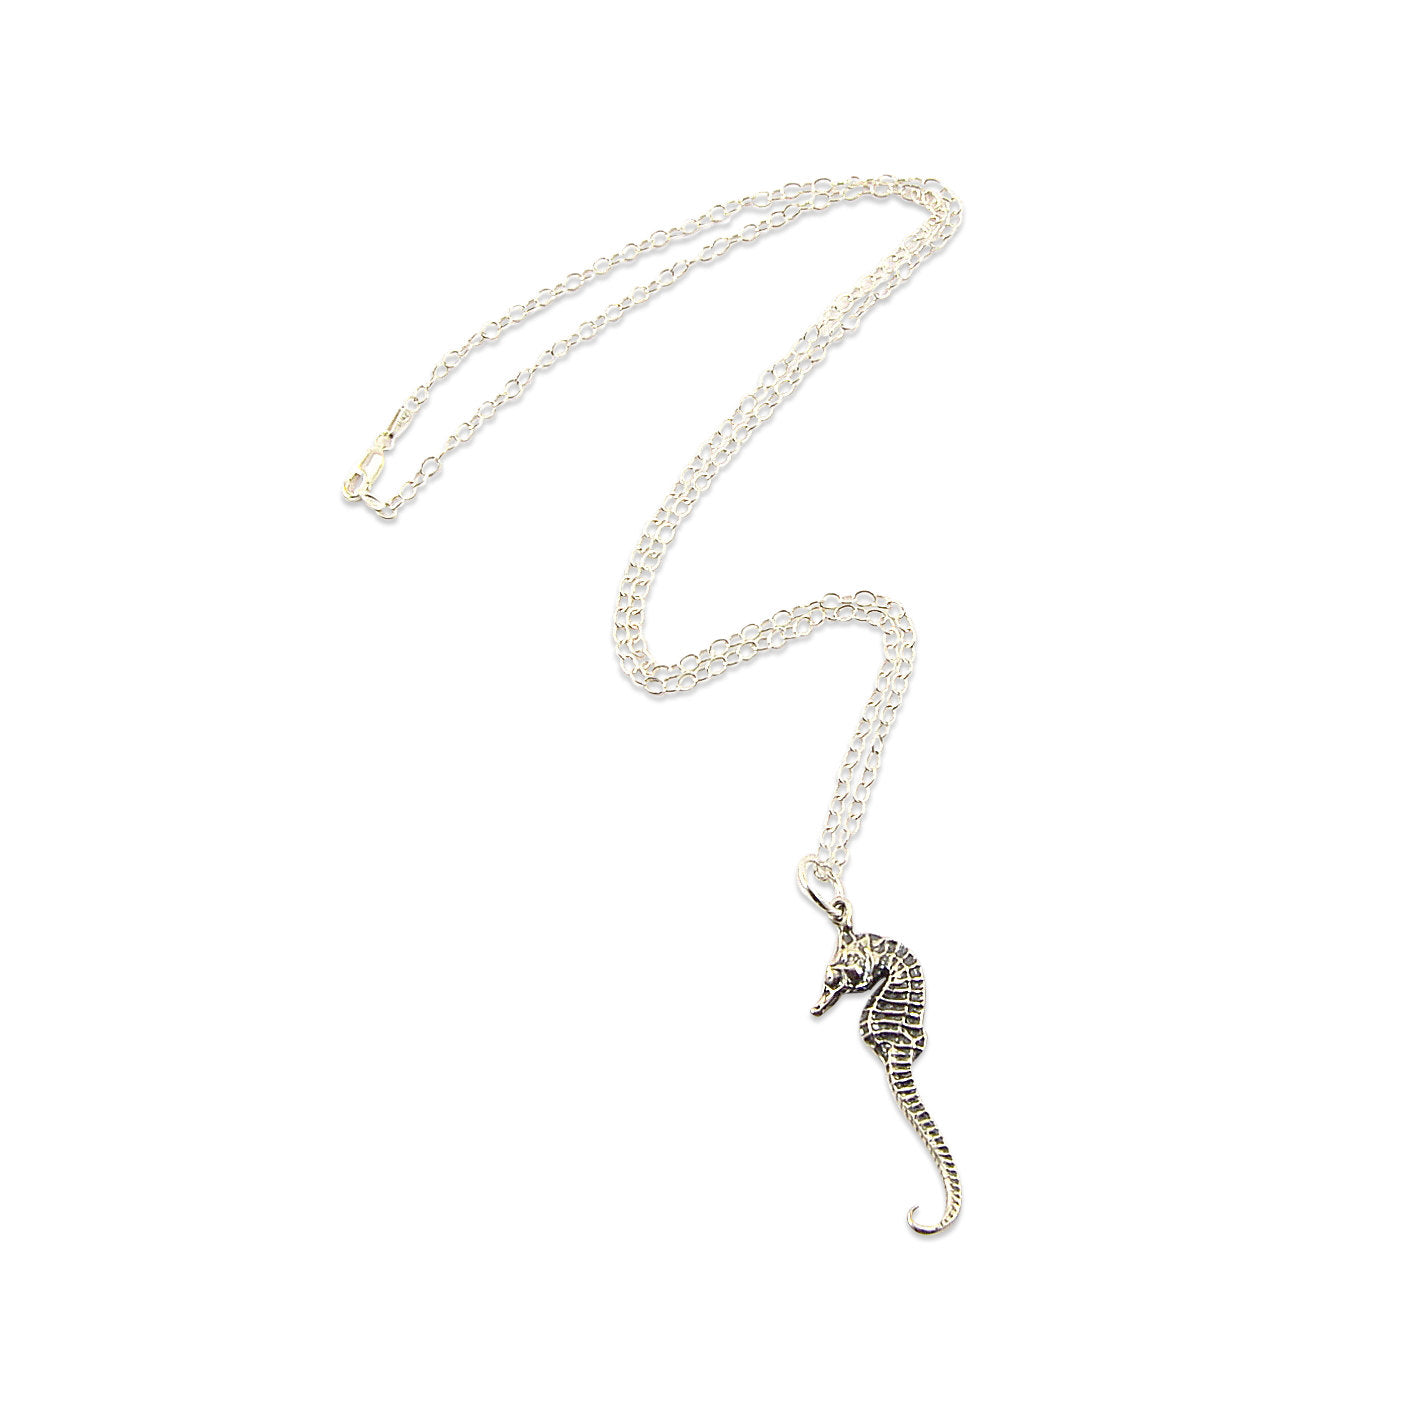 Seahorse Necklace - Gwen Delicious Jewelry Designs